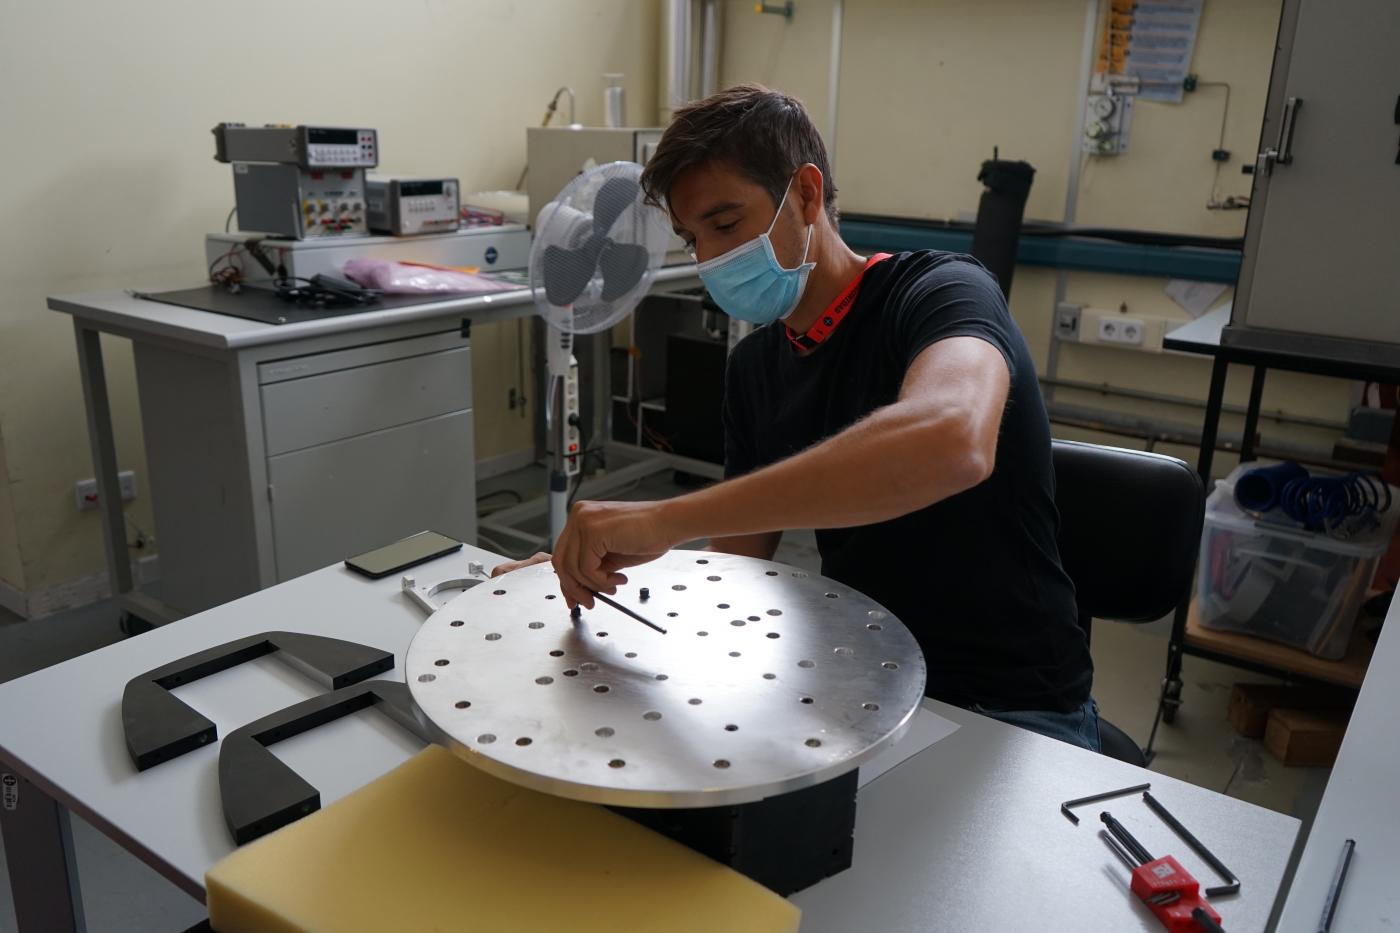 Imagen de Pablo de Chaves, ingeniero de IACTEC, ensamblando el útil de test para los ensayos de vibración del instrumento DRAGO en las instalaciones del Área de Ensayos del INTA (Instituto Nacional de Técnica Aeroespacial). Crédito: Alba Peláez (IAC).